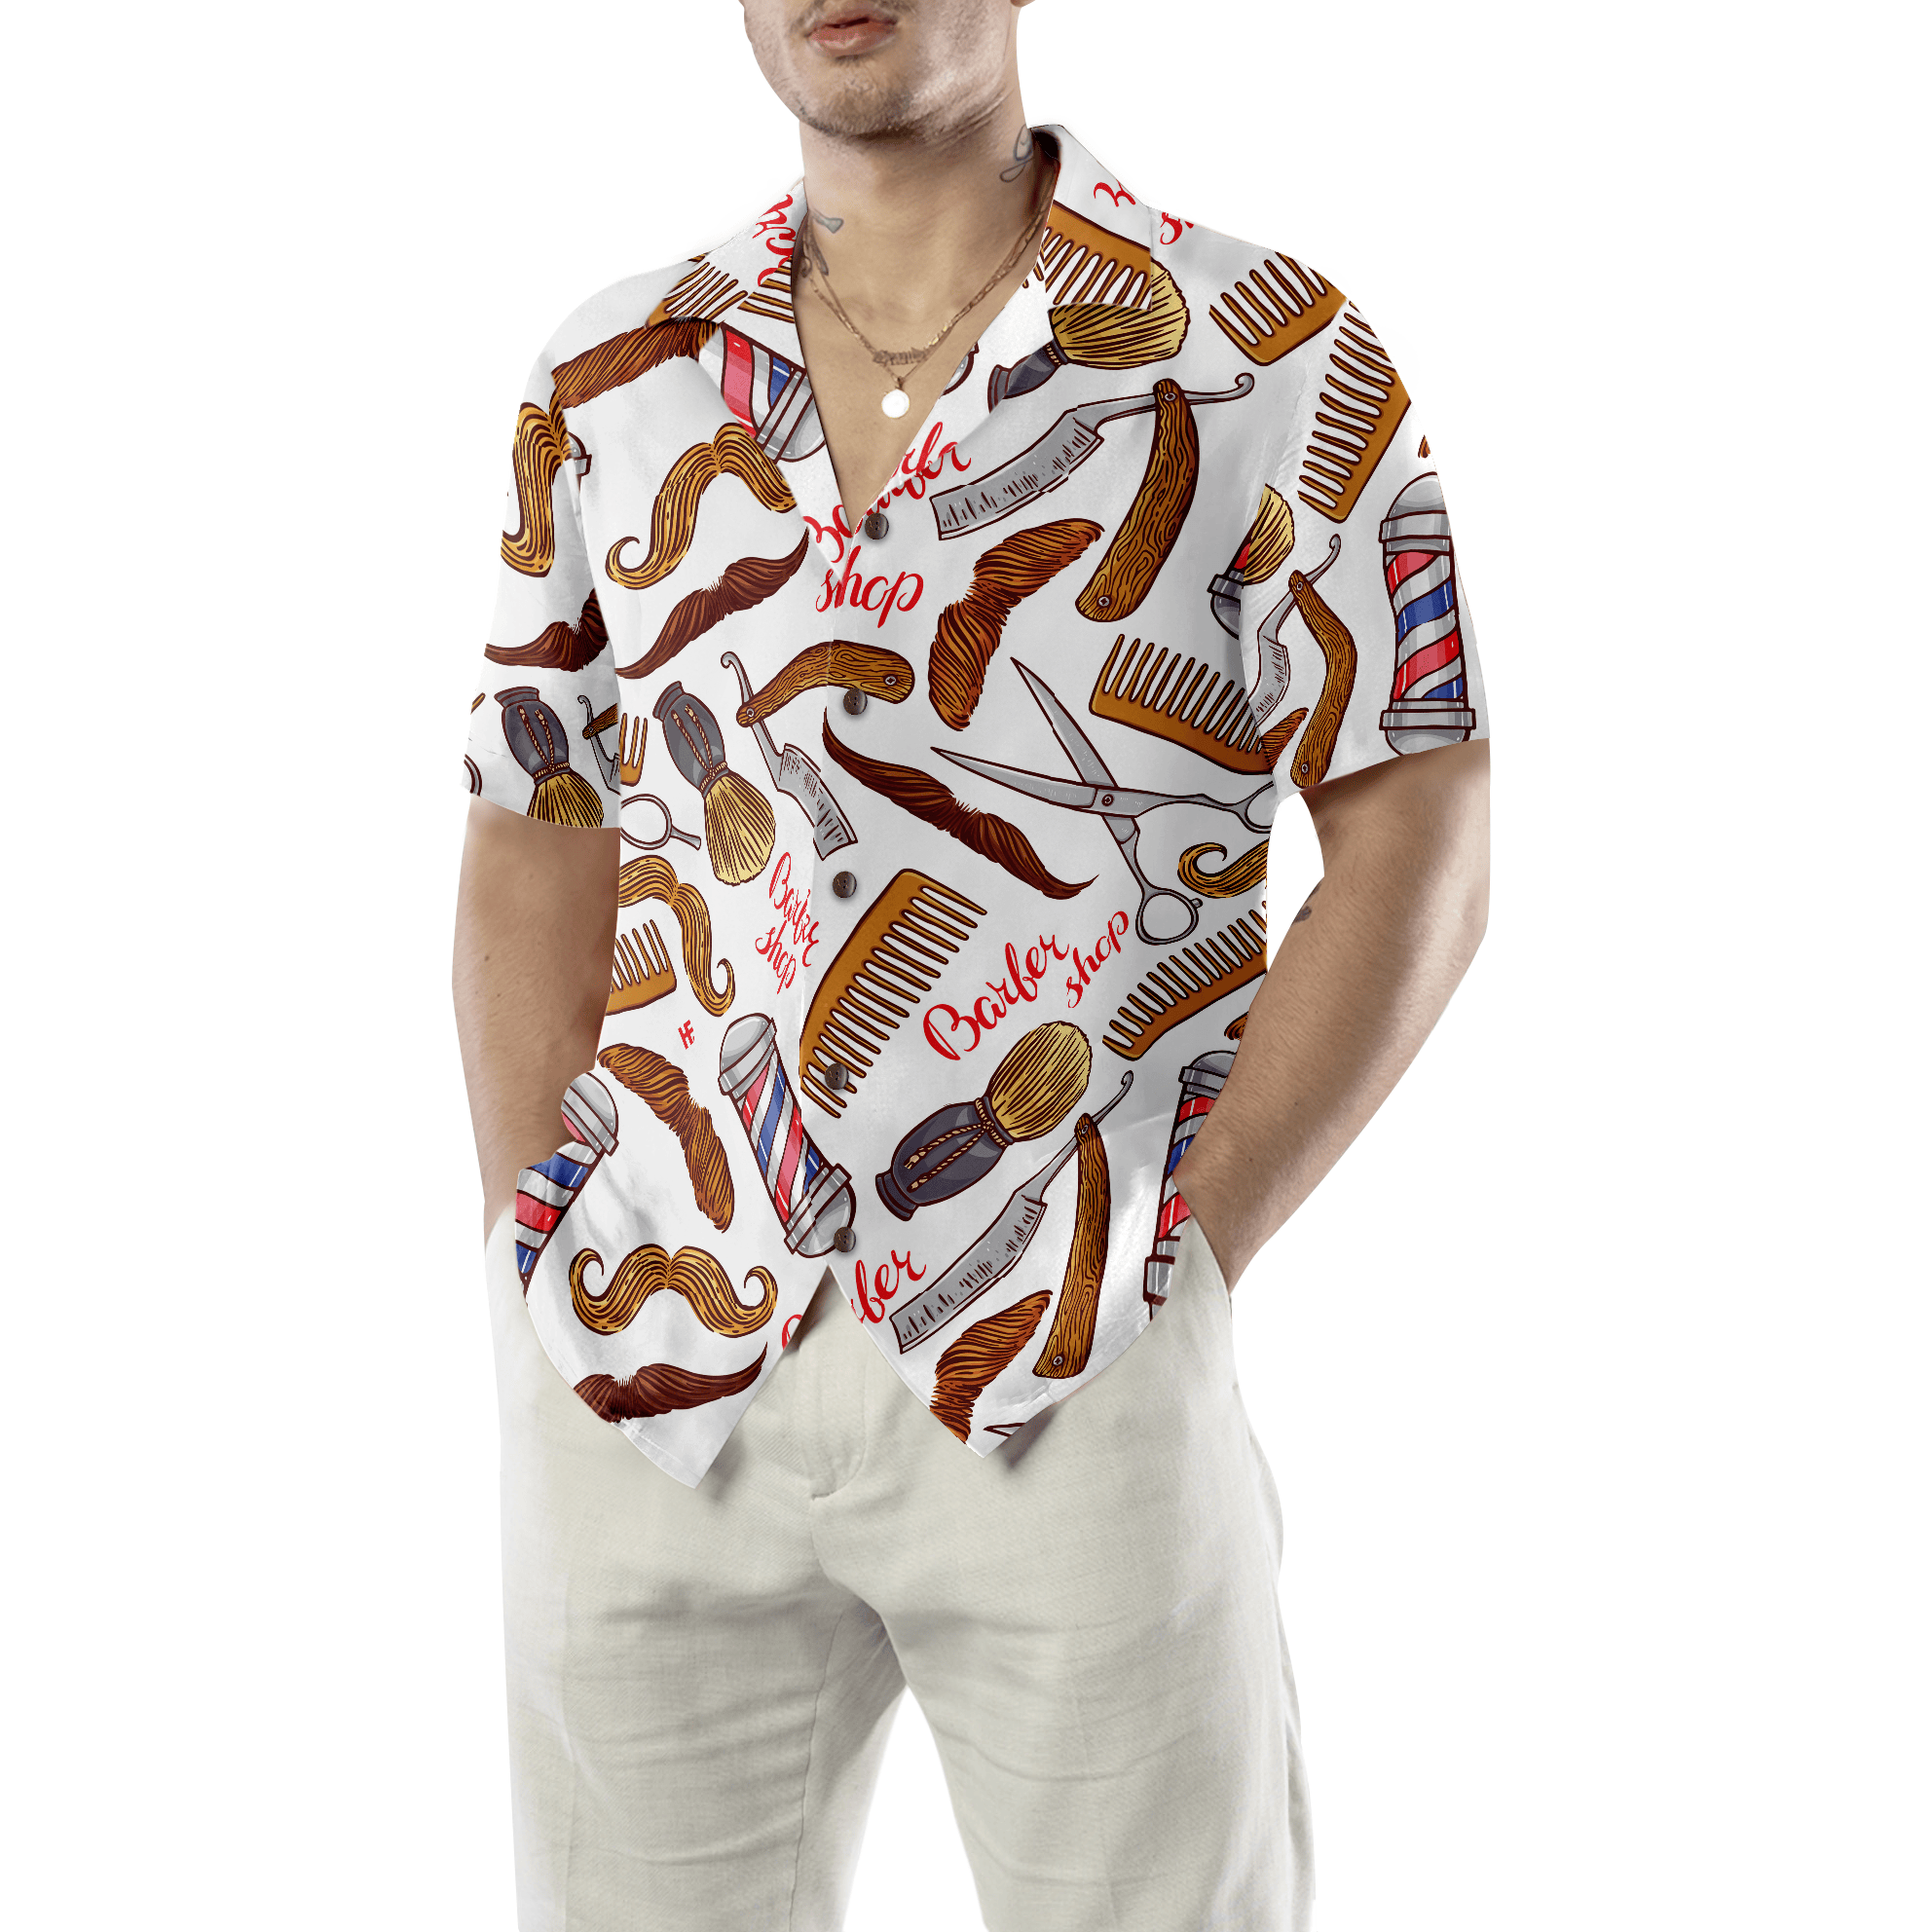 Barber's Life Shirt For Men Hawaiian Shirt